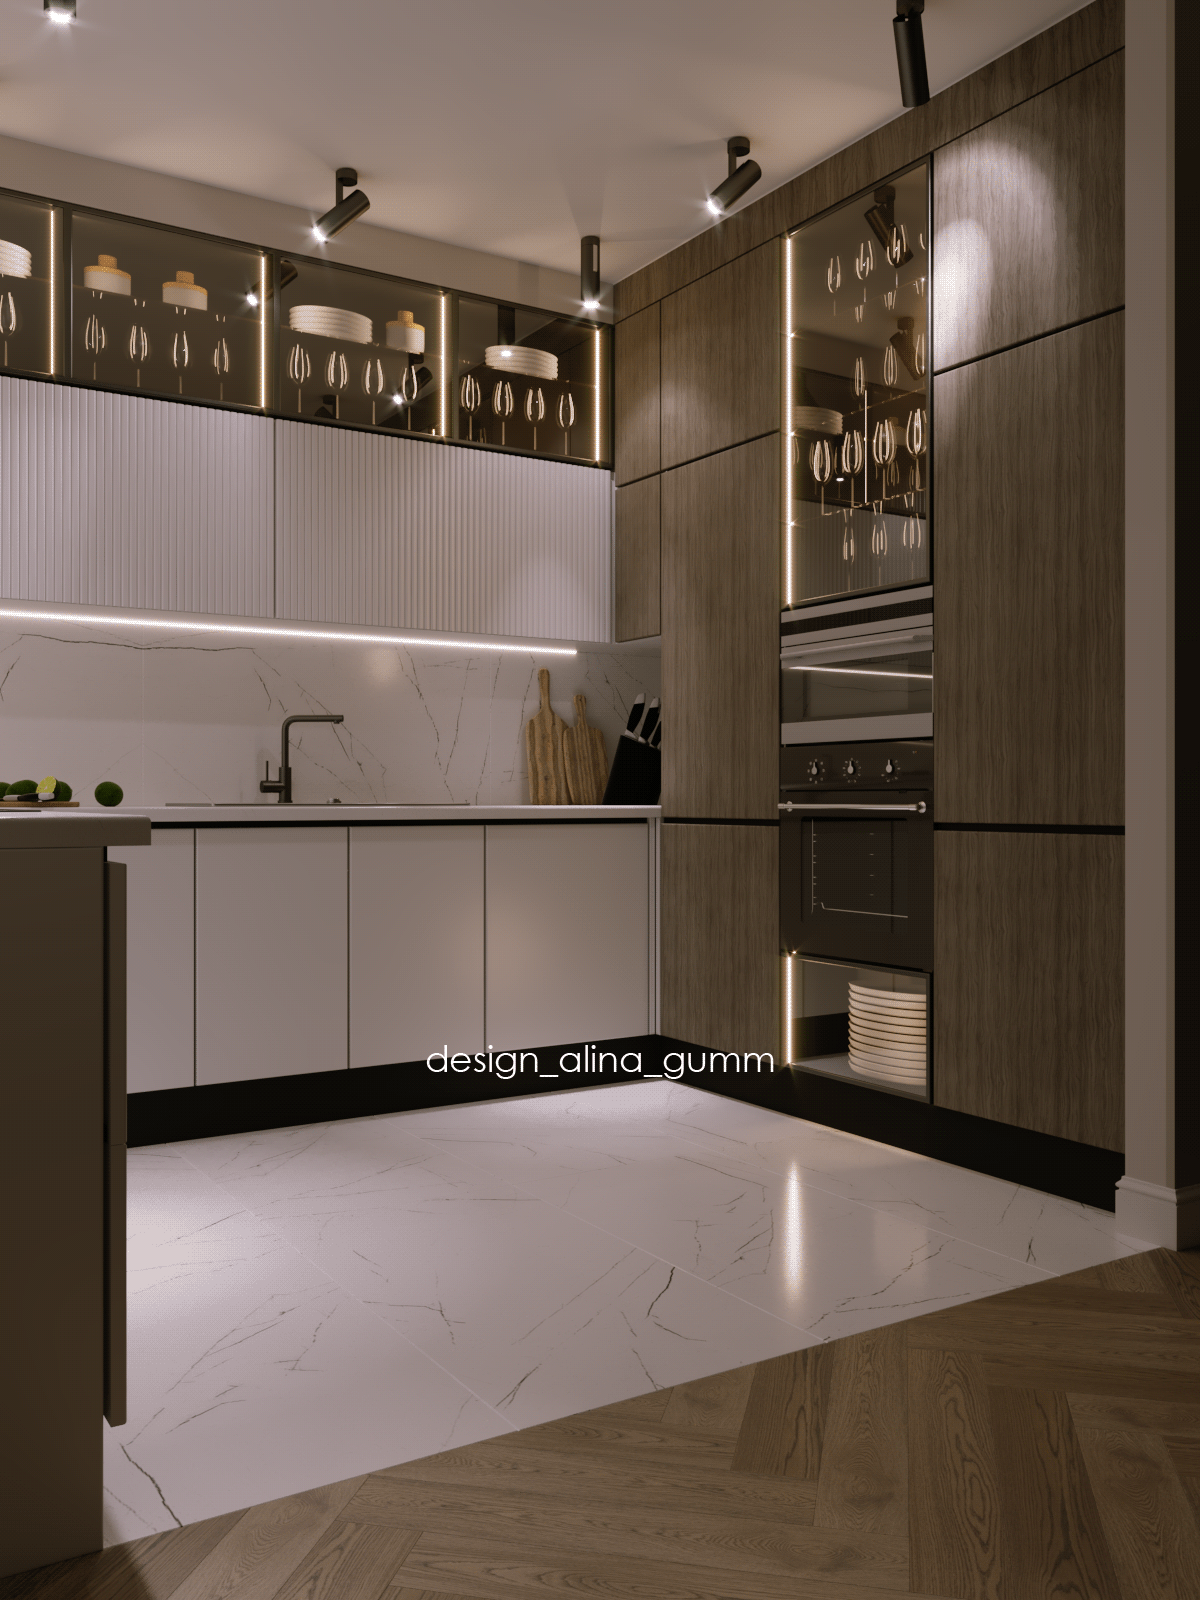 Витрины дизайн дома Дизайн квартиры дизайн кухни  минимализм паркет елочка профильные ручки современный интерьер уфа шпон